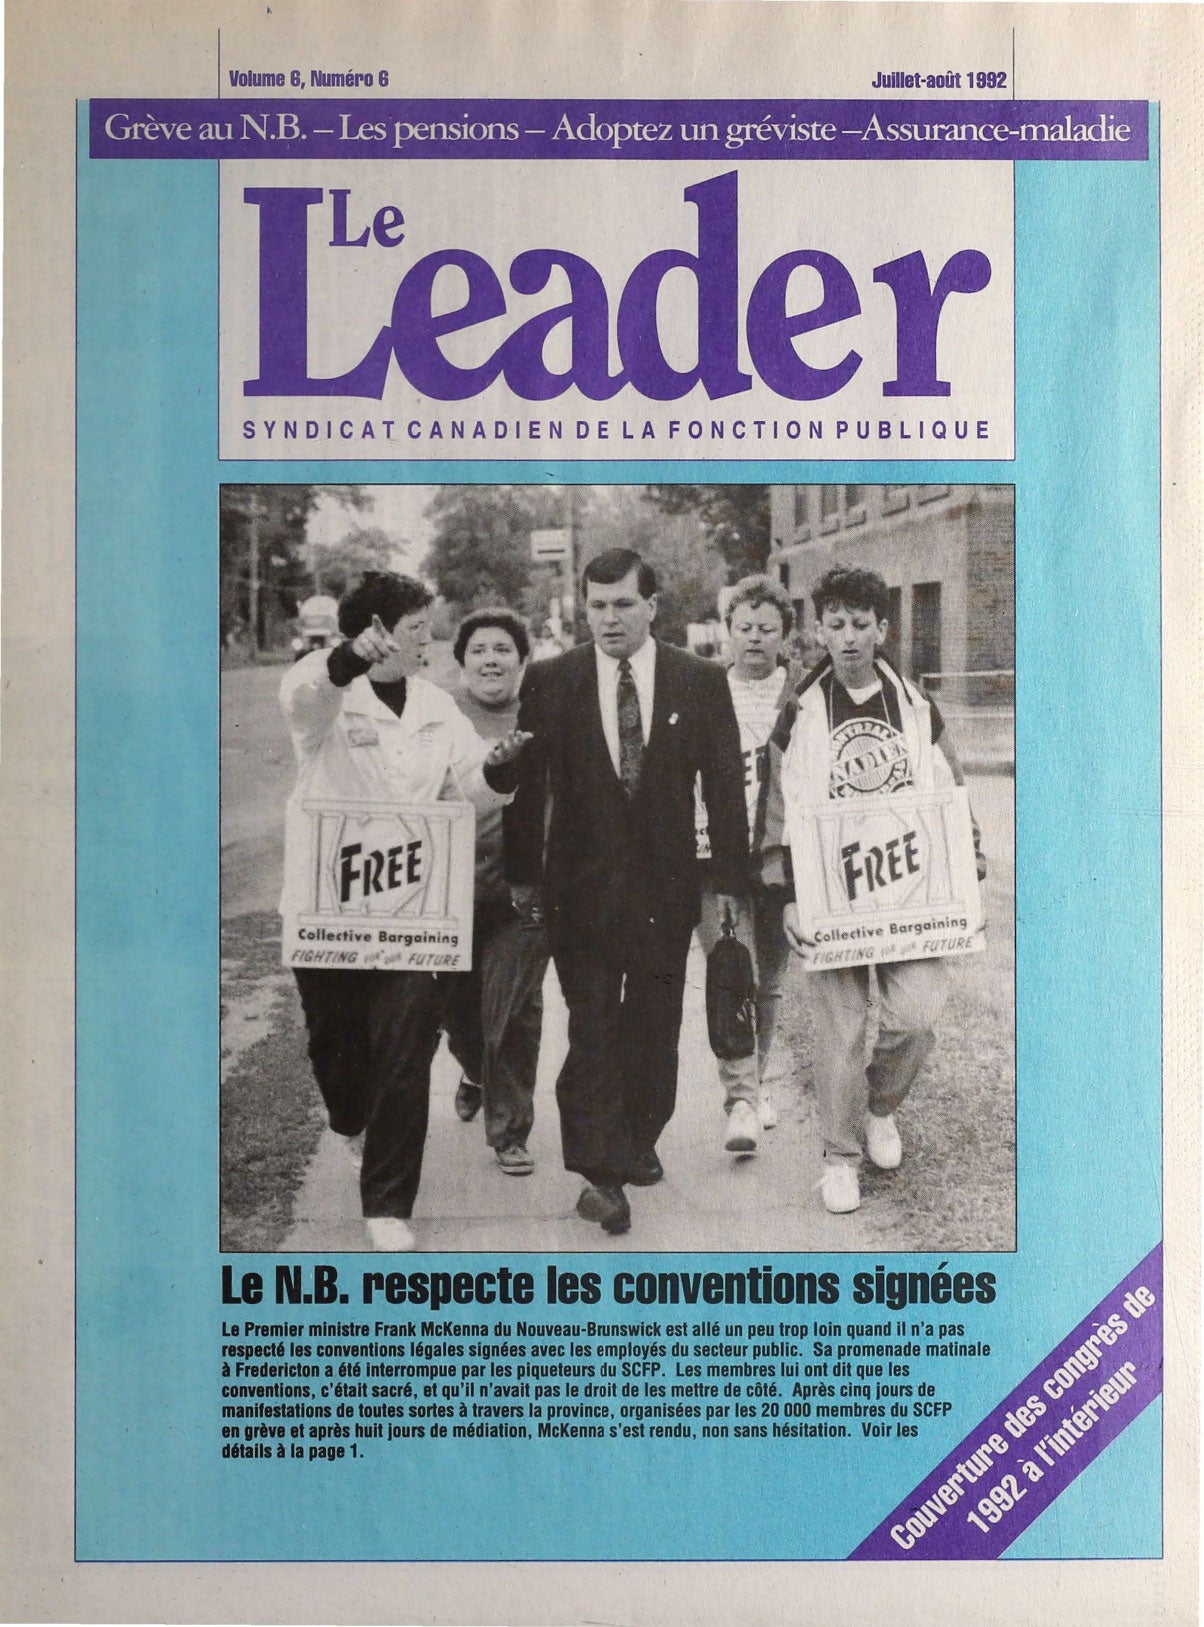 Le Leader juillet-aout 1992 p. 1